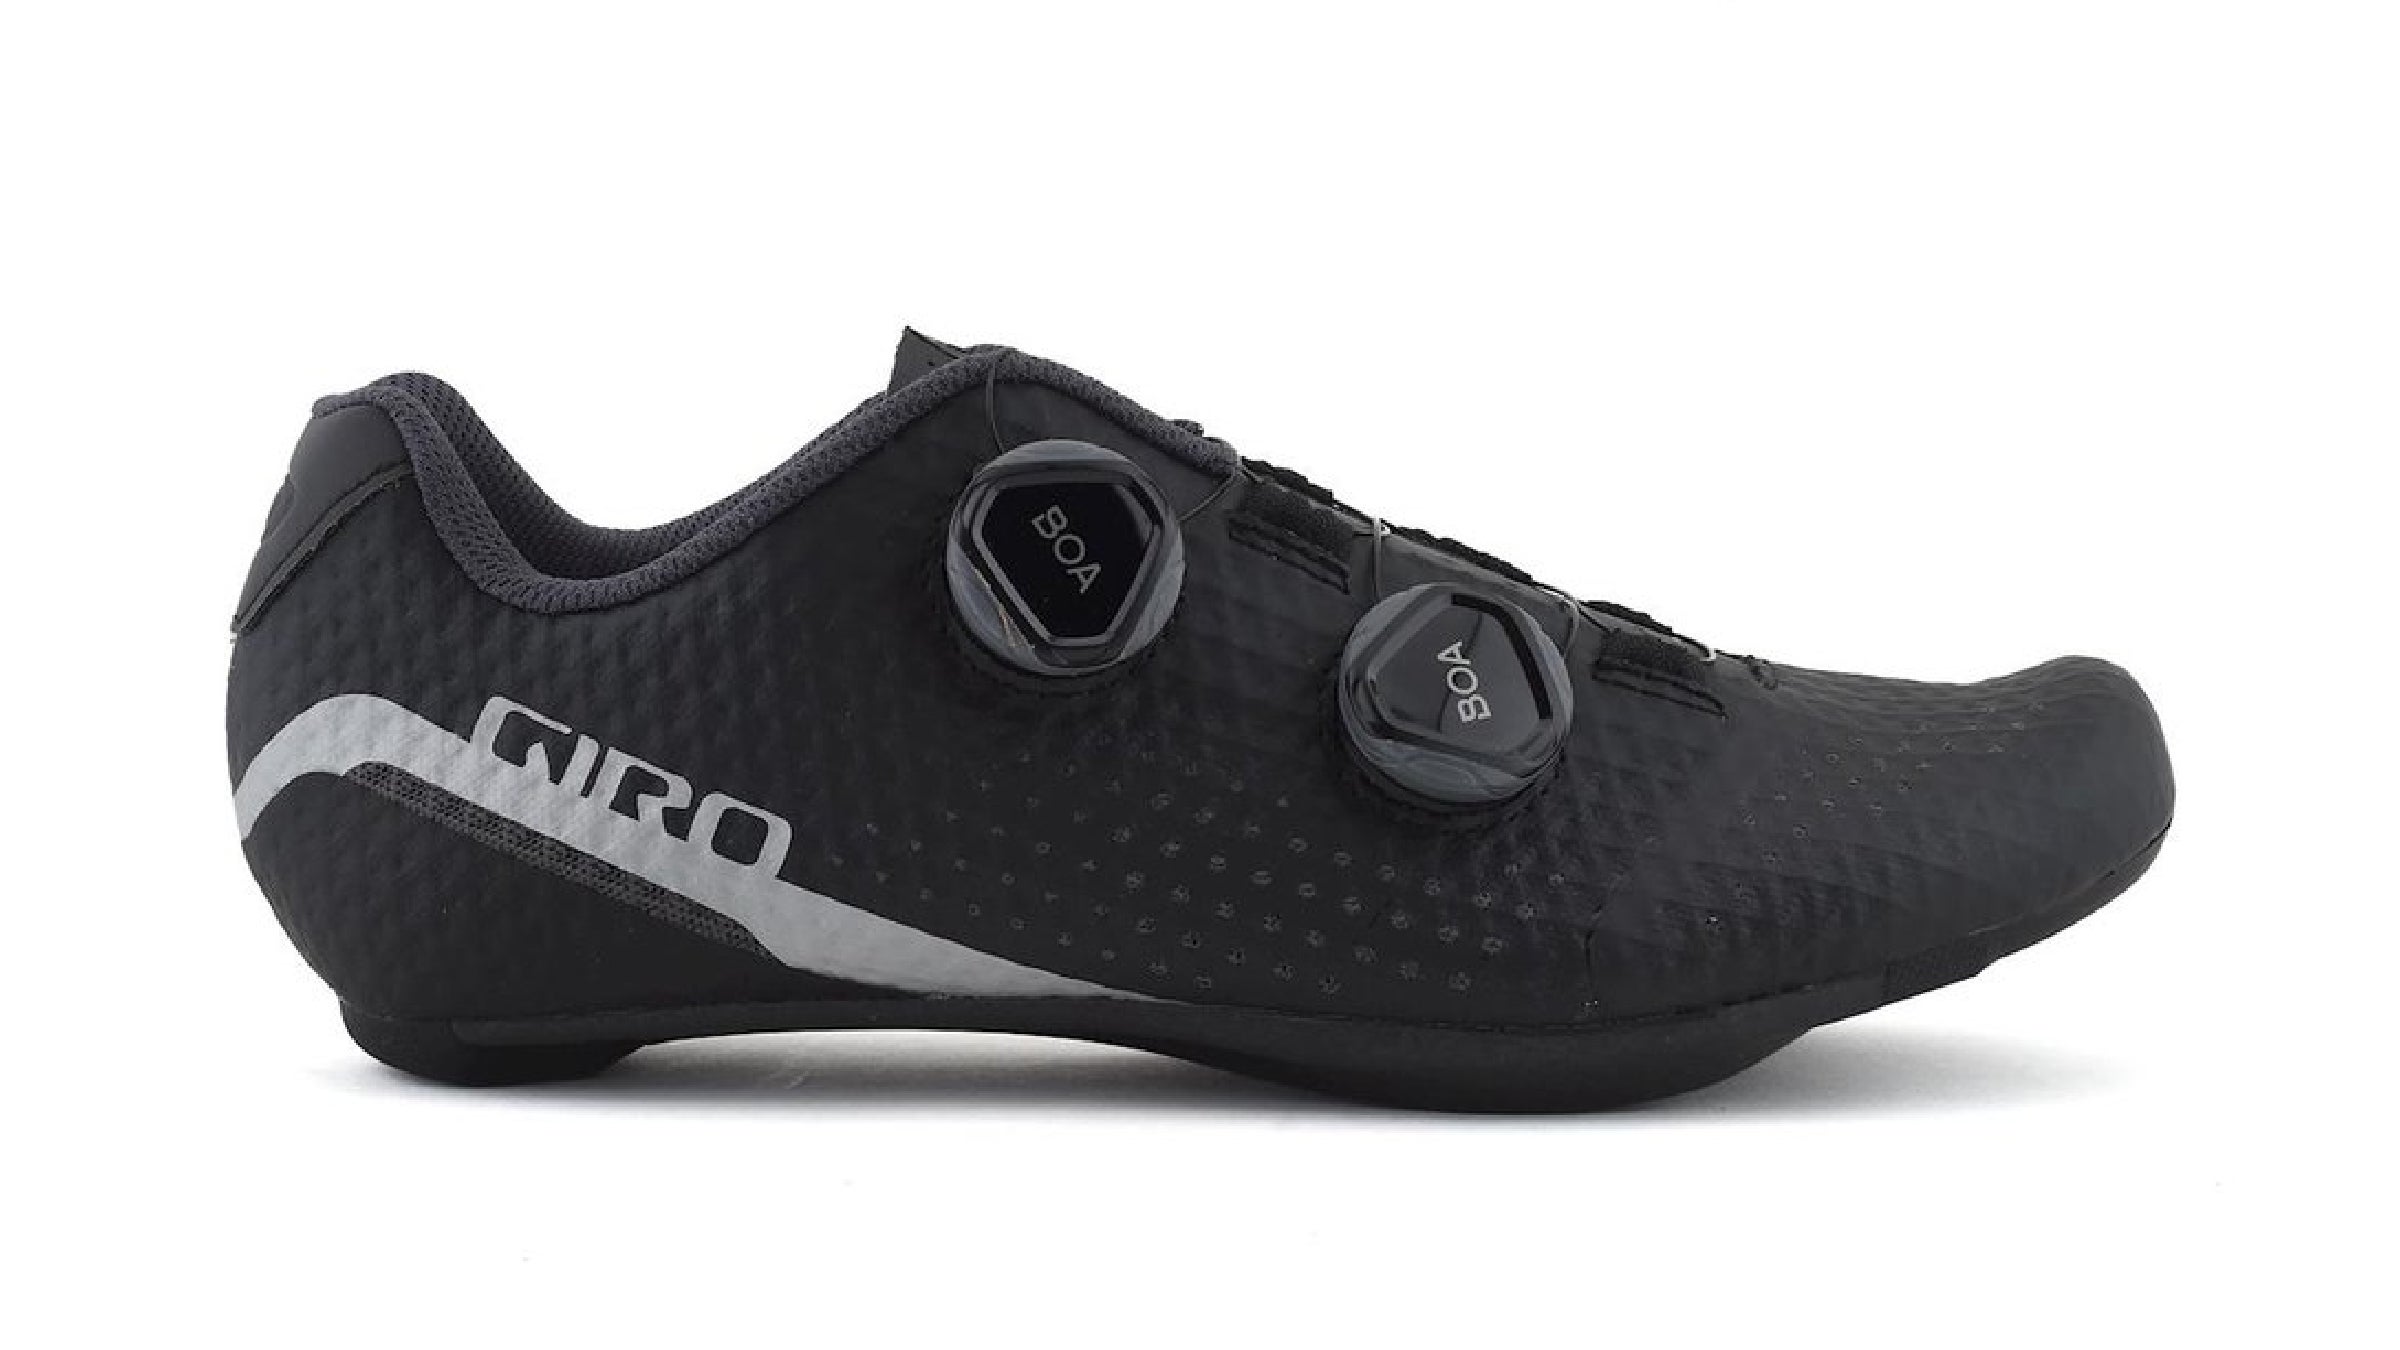 Giro Regime cycling shoe